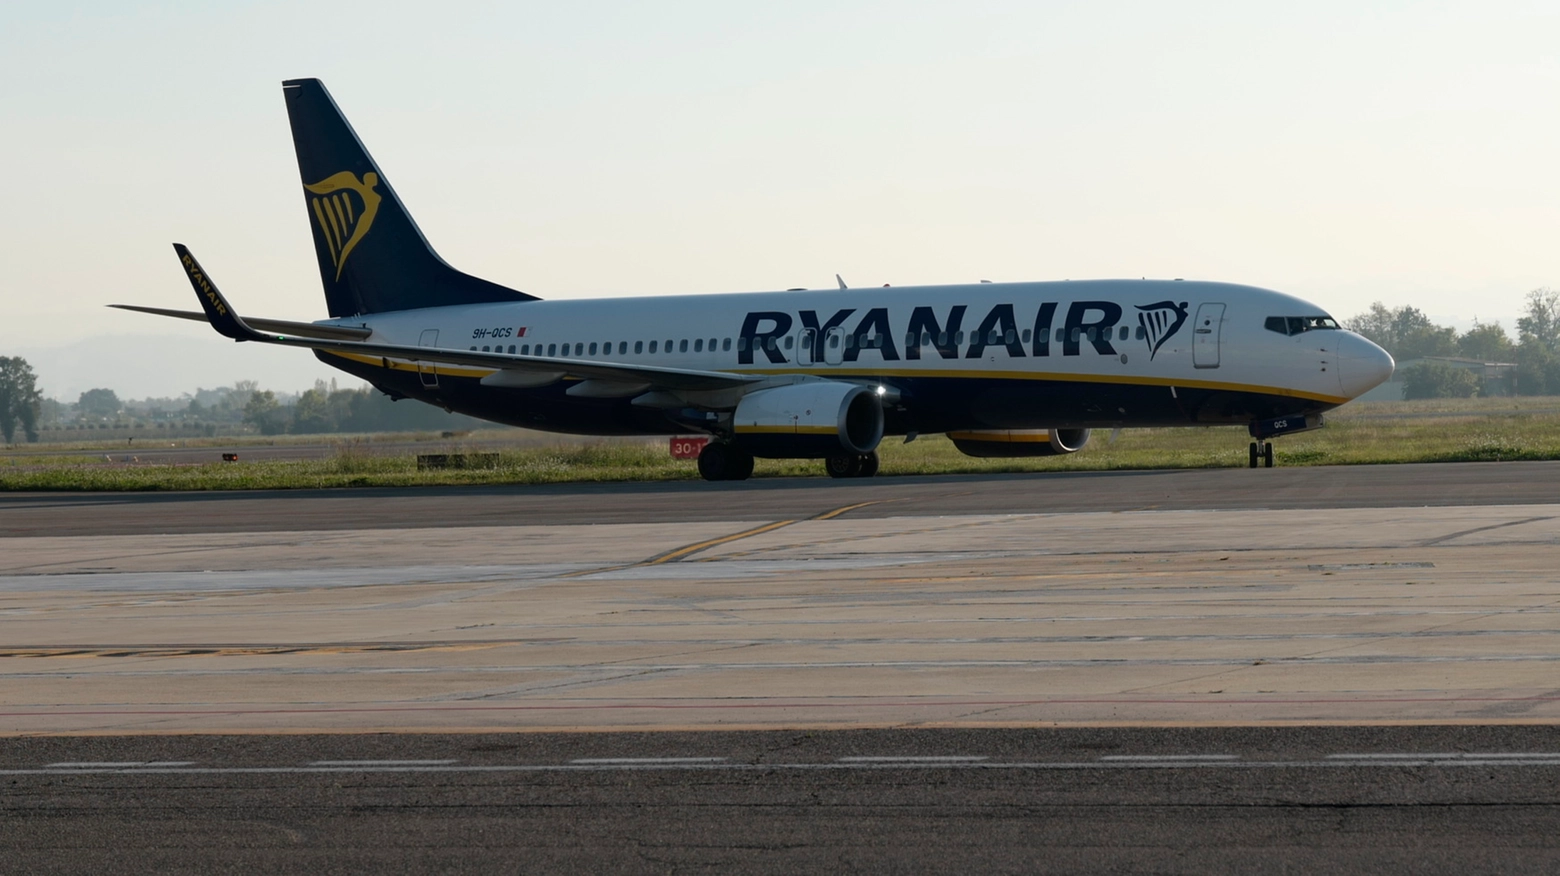 Il pilota dell’aereo Ryanair ha invertito la rotta, tornando allo scalo di Caselle, da dove era decollato. Inutili i tentativi di rianimazione in pista. Sotto choc la moglie della giovane, trasportata in ospedale